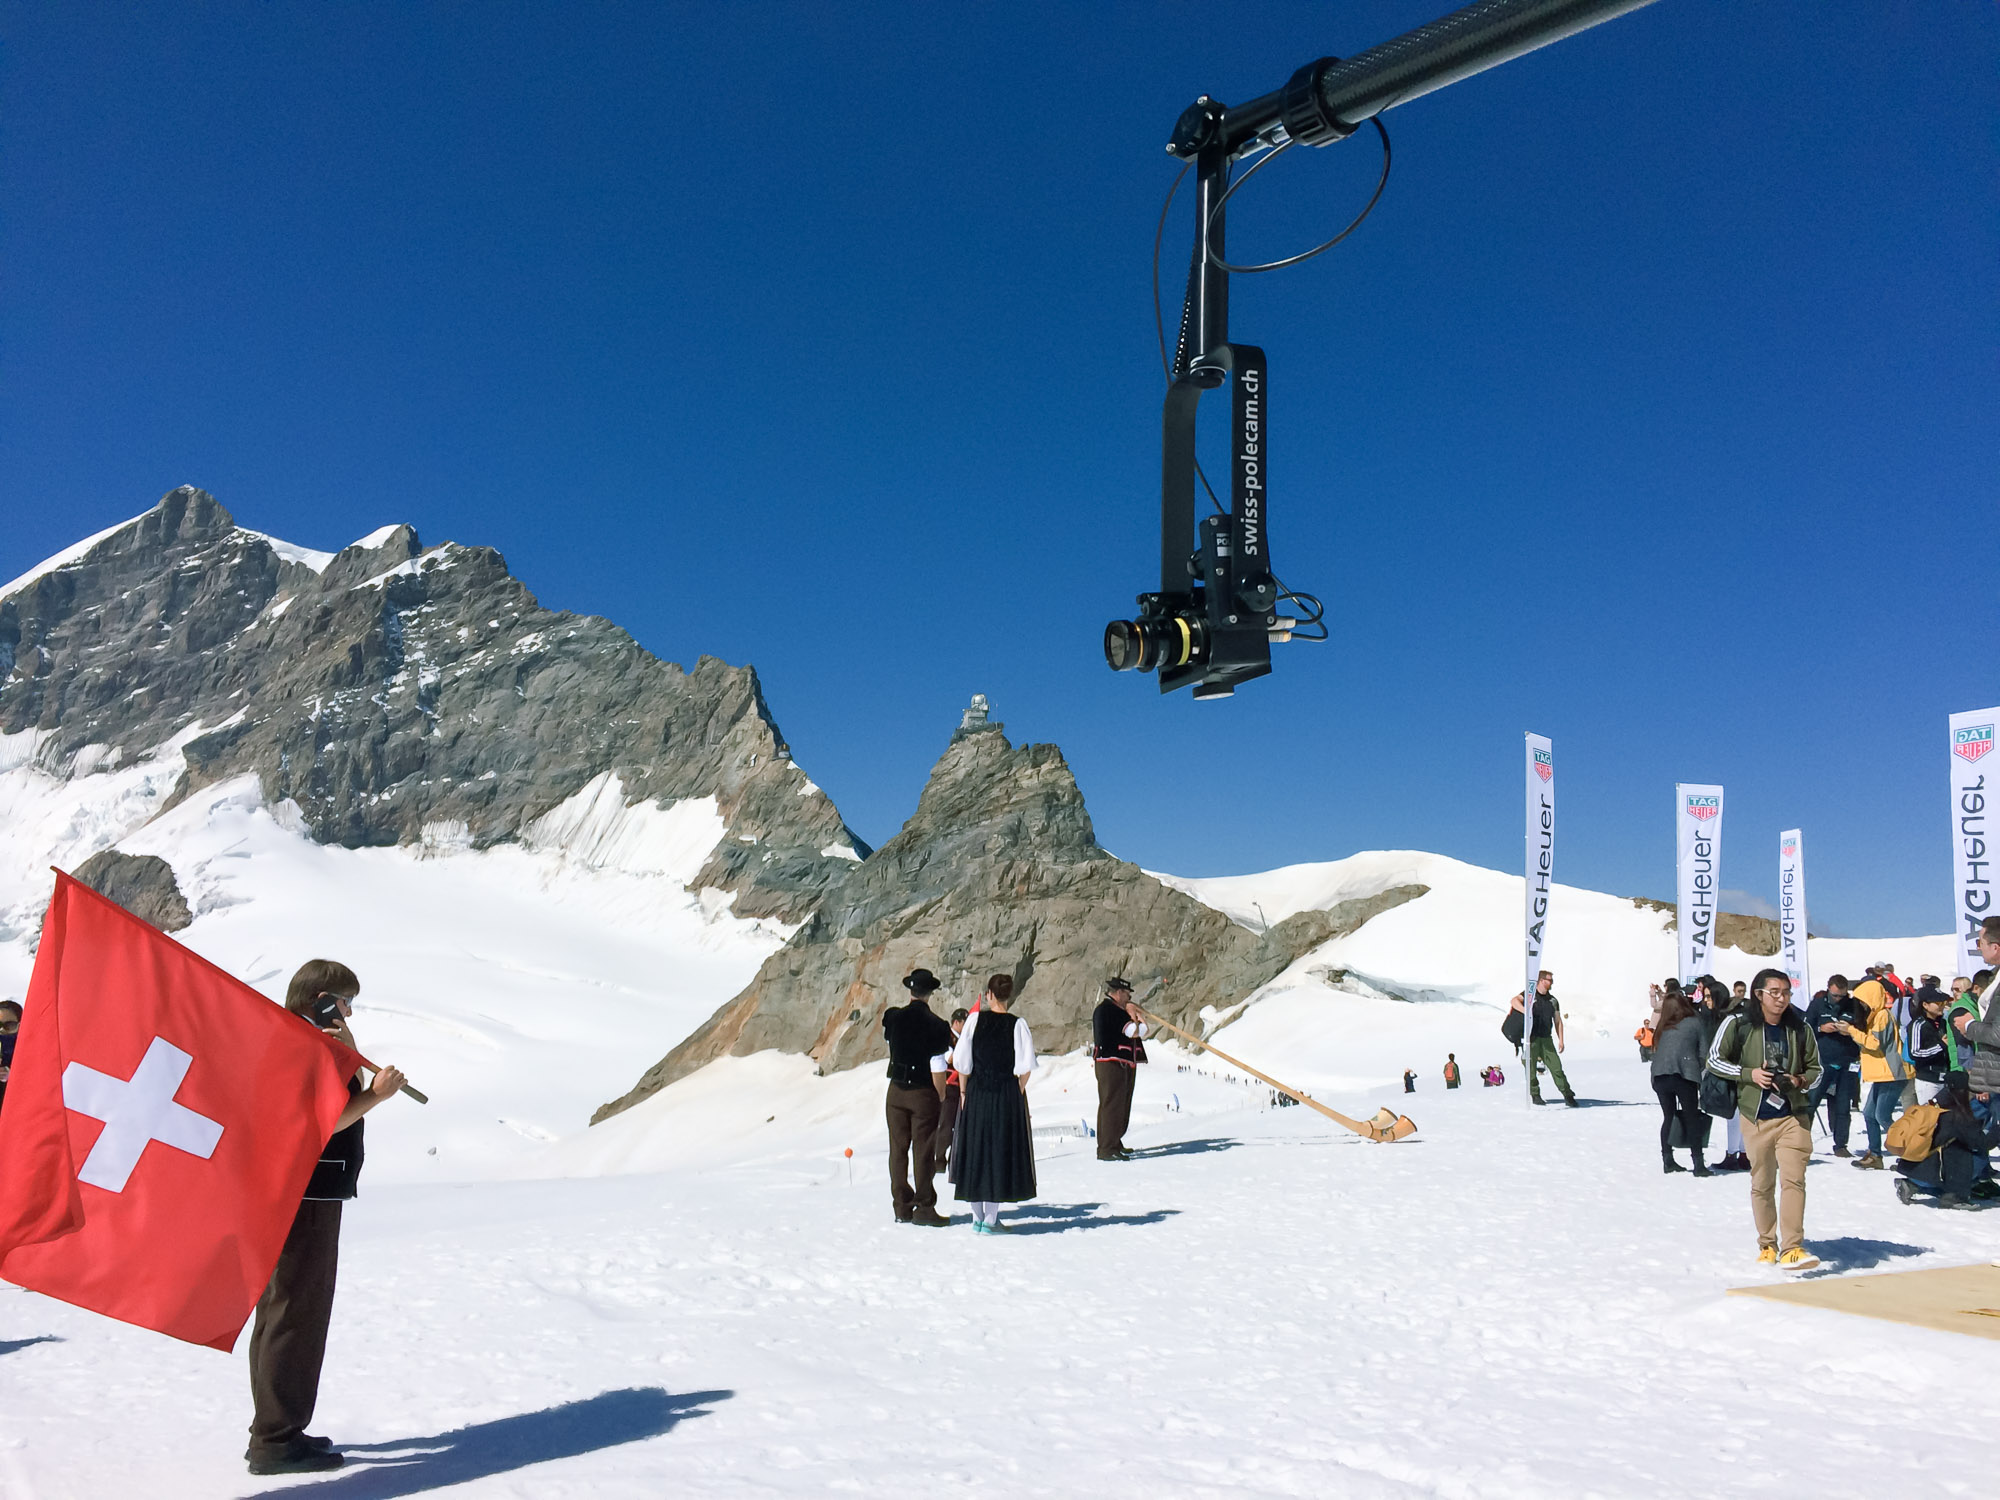 Polecam @ Jungfraujoch